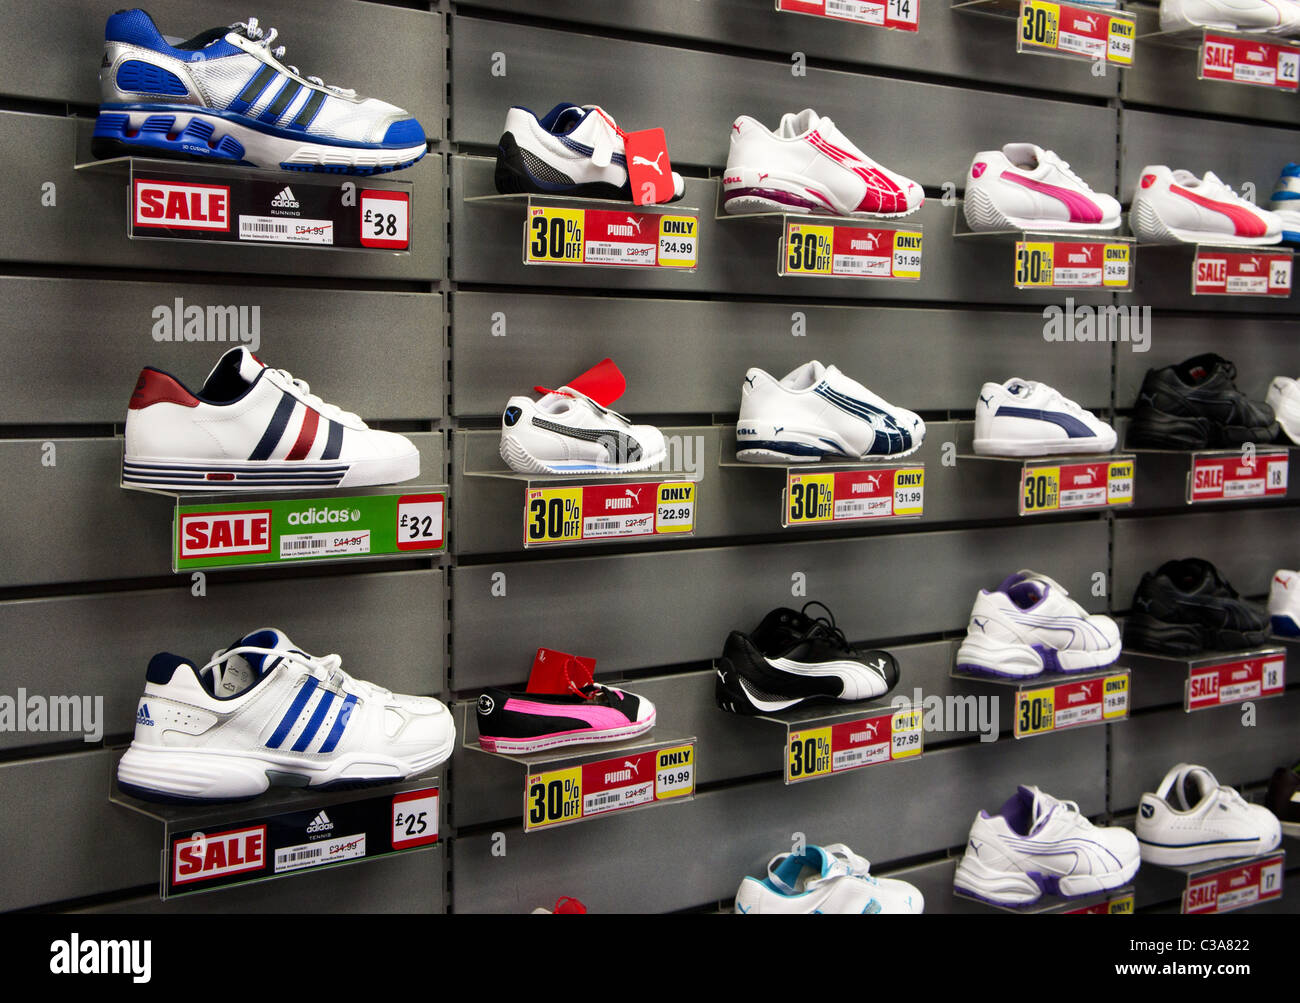 sporting goods store, uk Stock Photo 